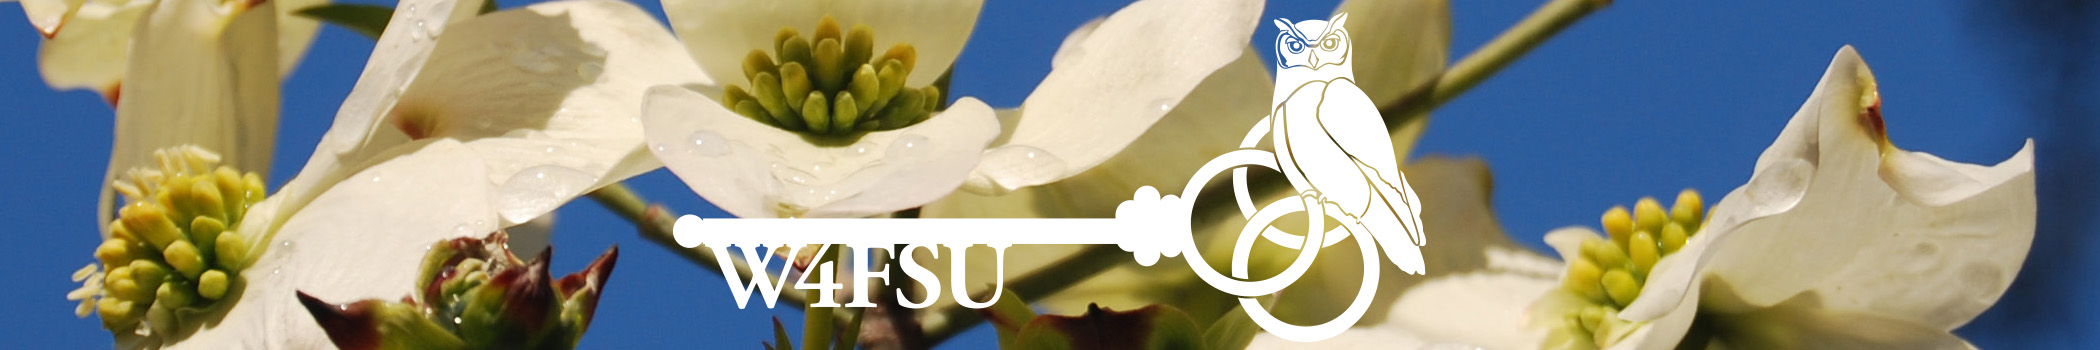 W4FSU logo over flowers